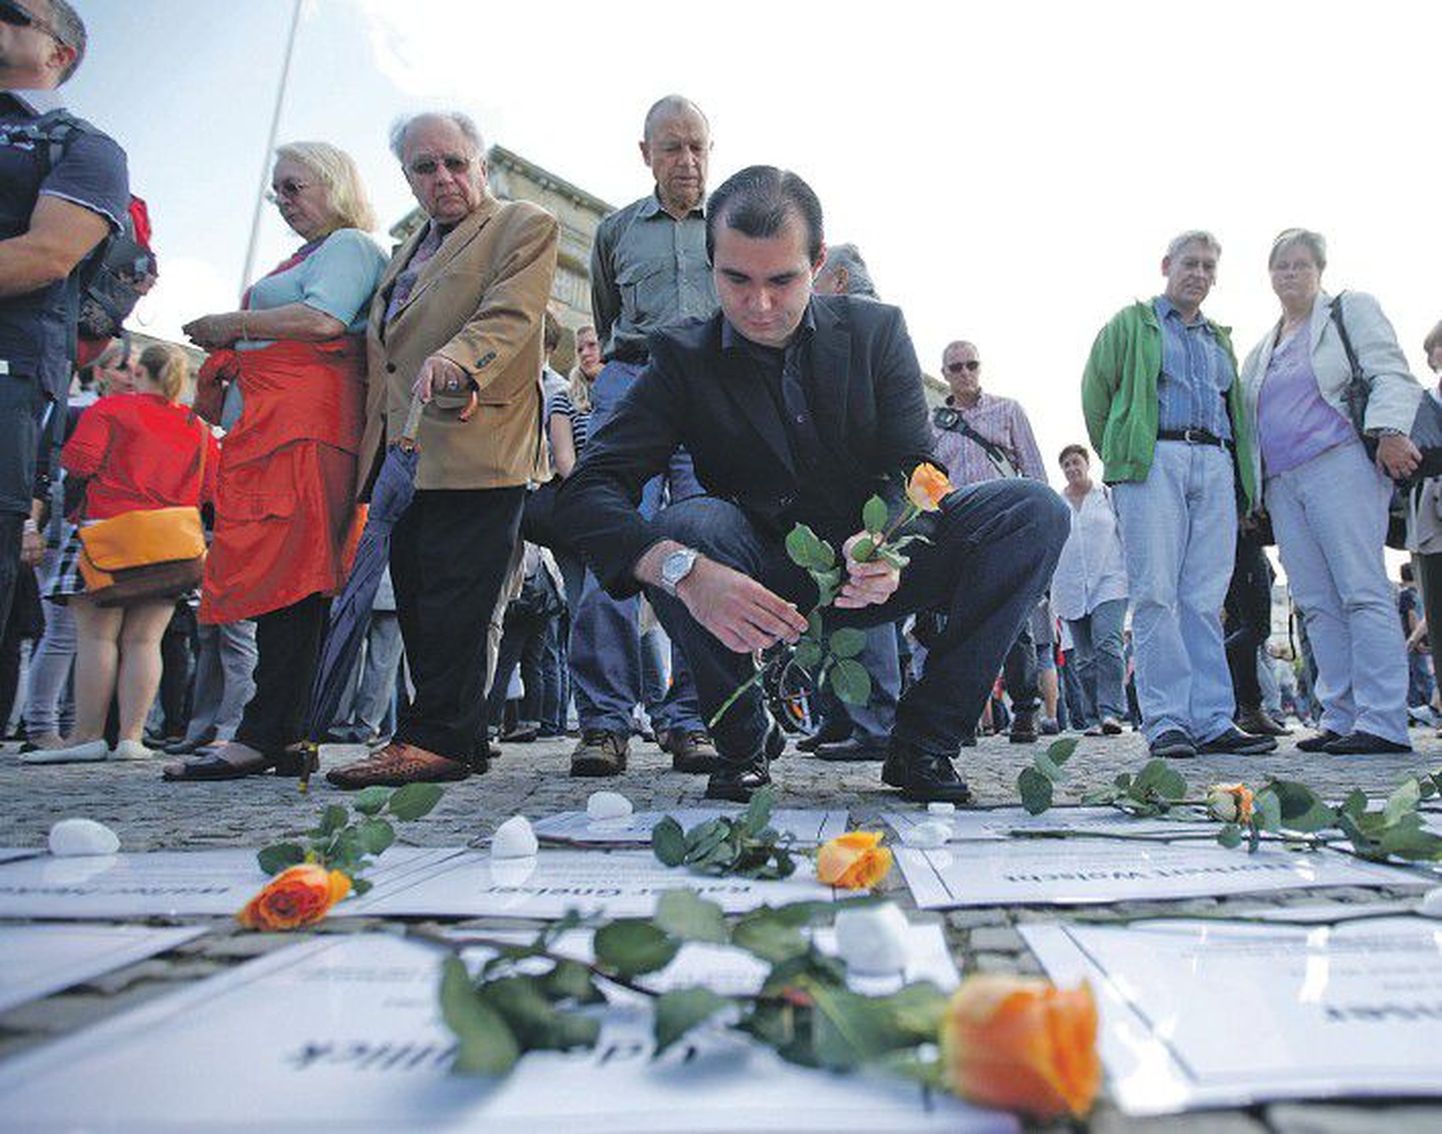 13 августа жители Германии возлагали цветы в память о погибших, пытавшихся пересечь Берлинскую стену.